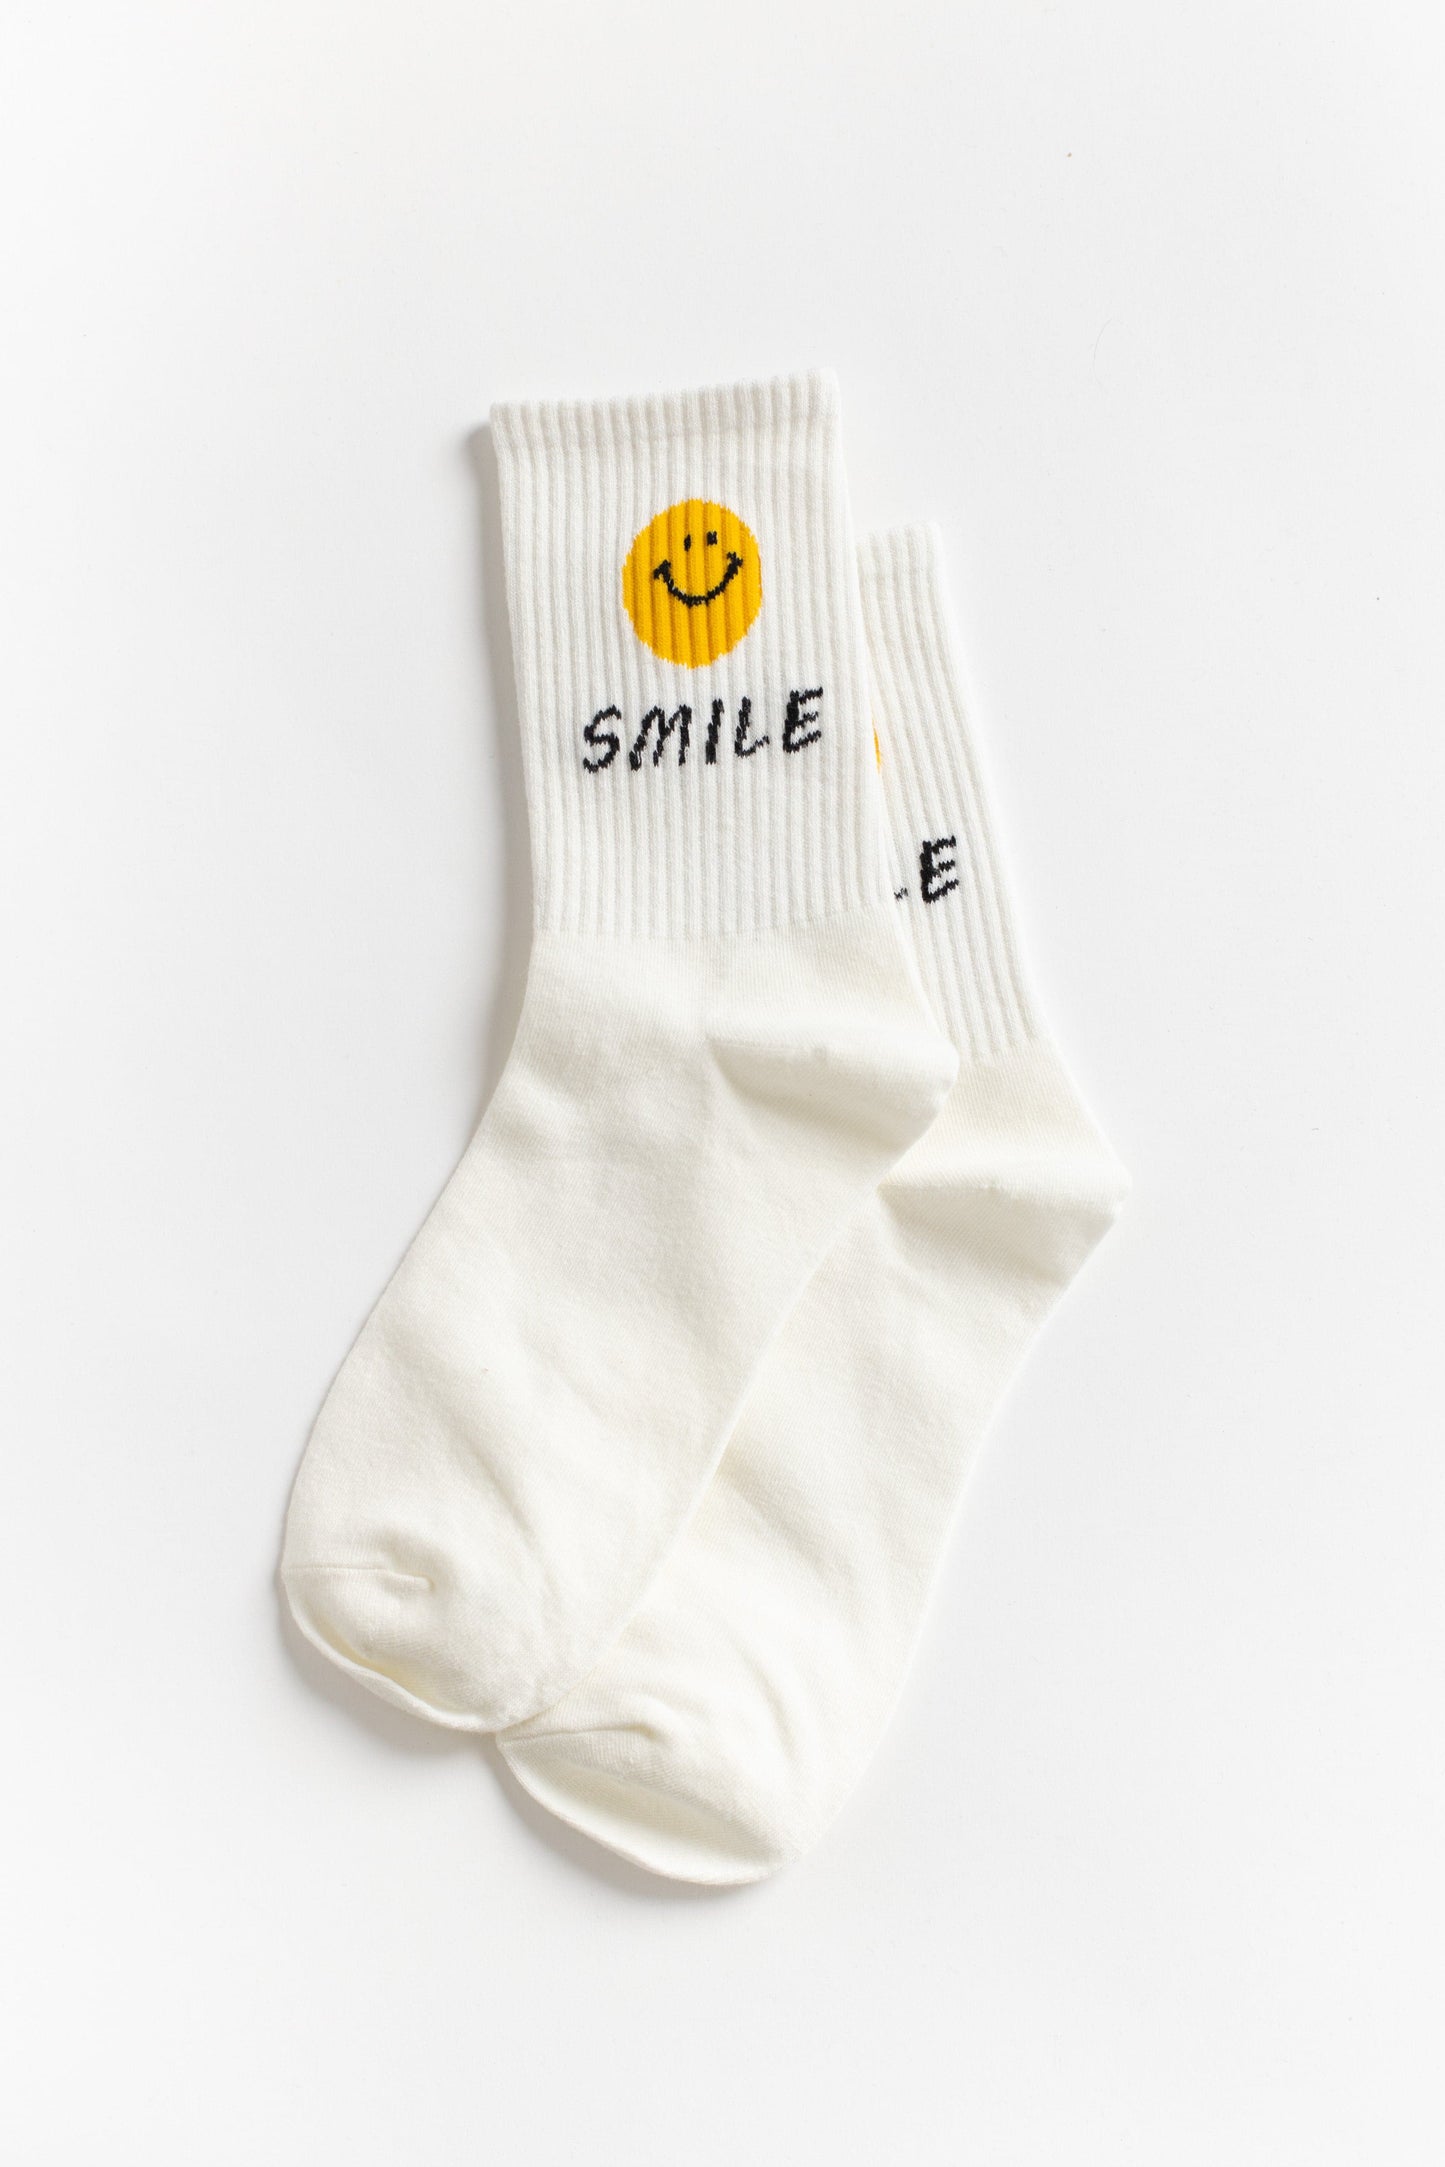 Smiley Quarter Socks WOMEN'S SOCKS brass & roe 